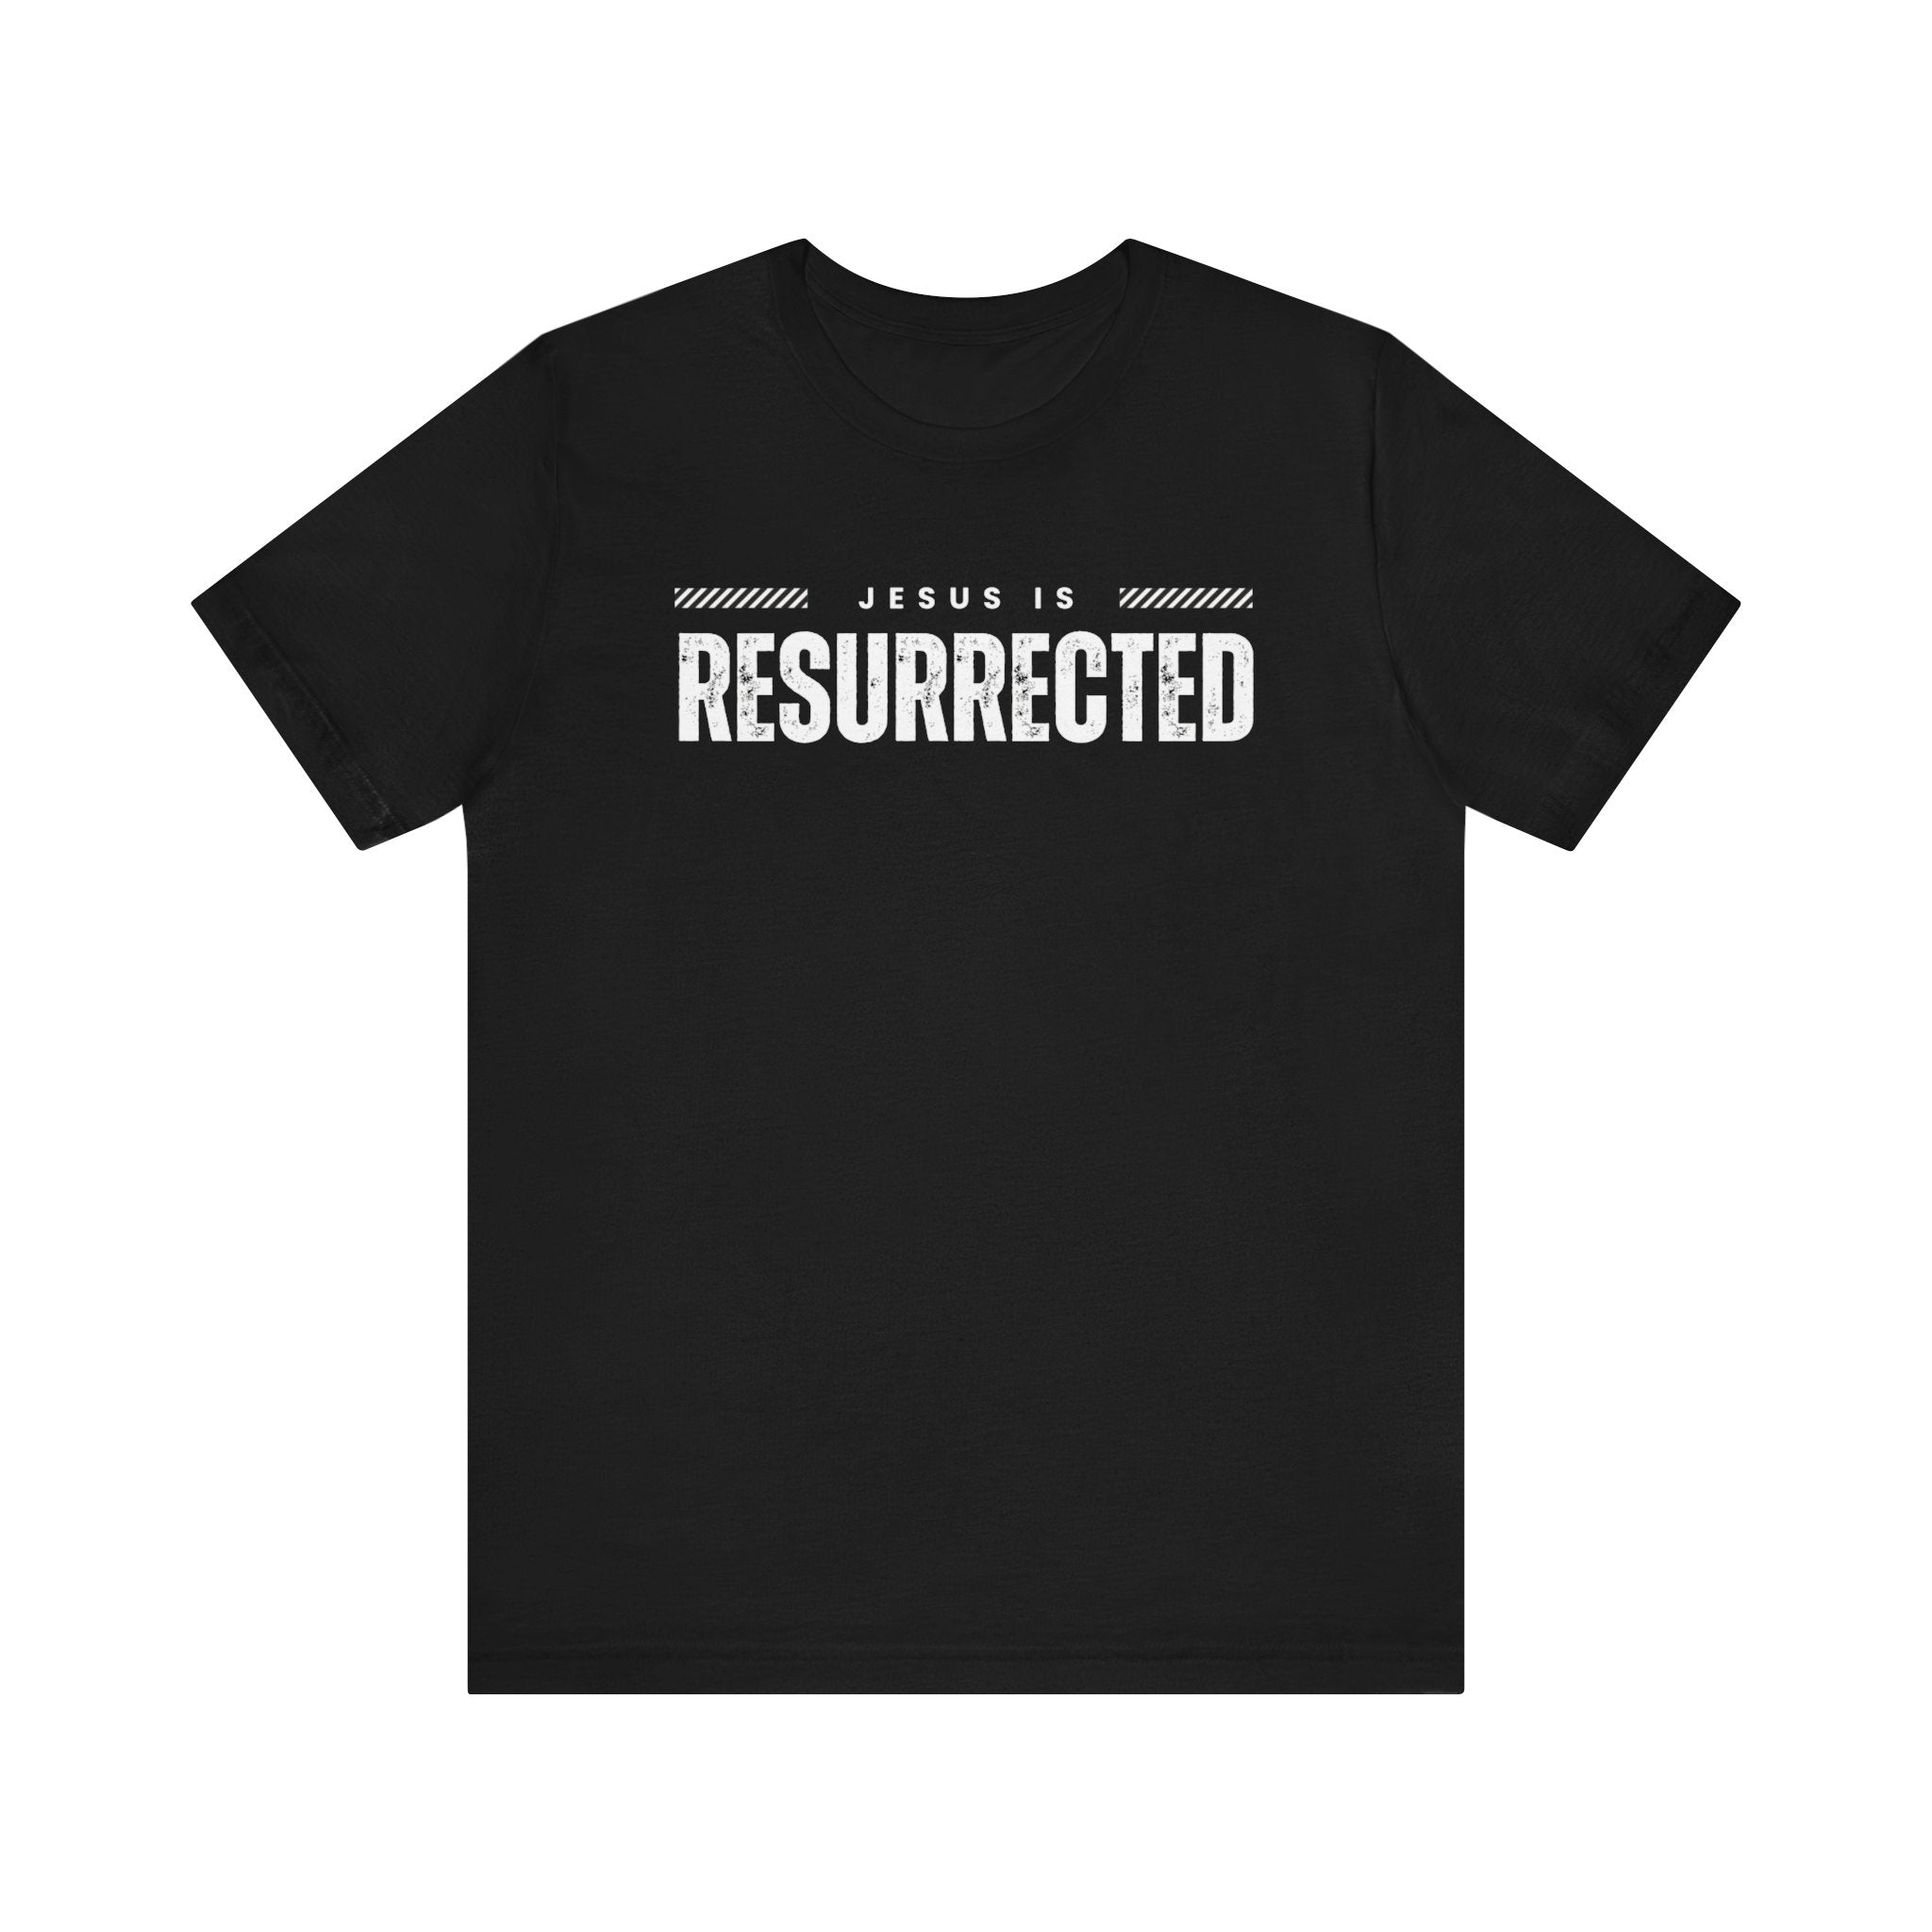 Christian Easter Shirt, Shirt For Easter, Easter Gift, Jesus Is Resurrected, Easter Day Shirt